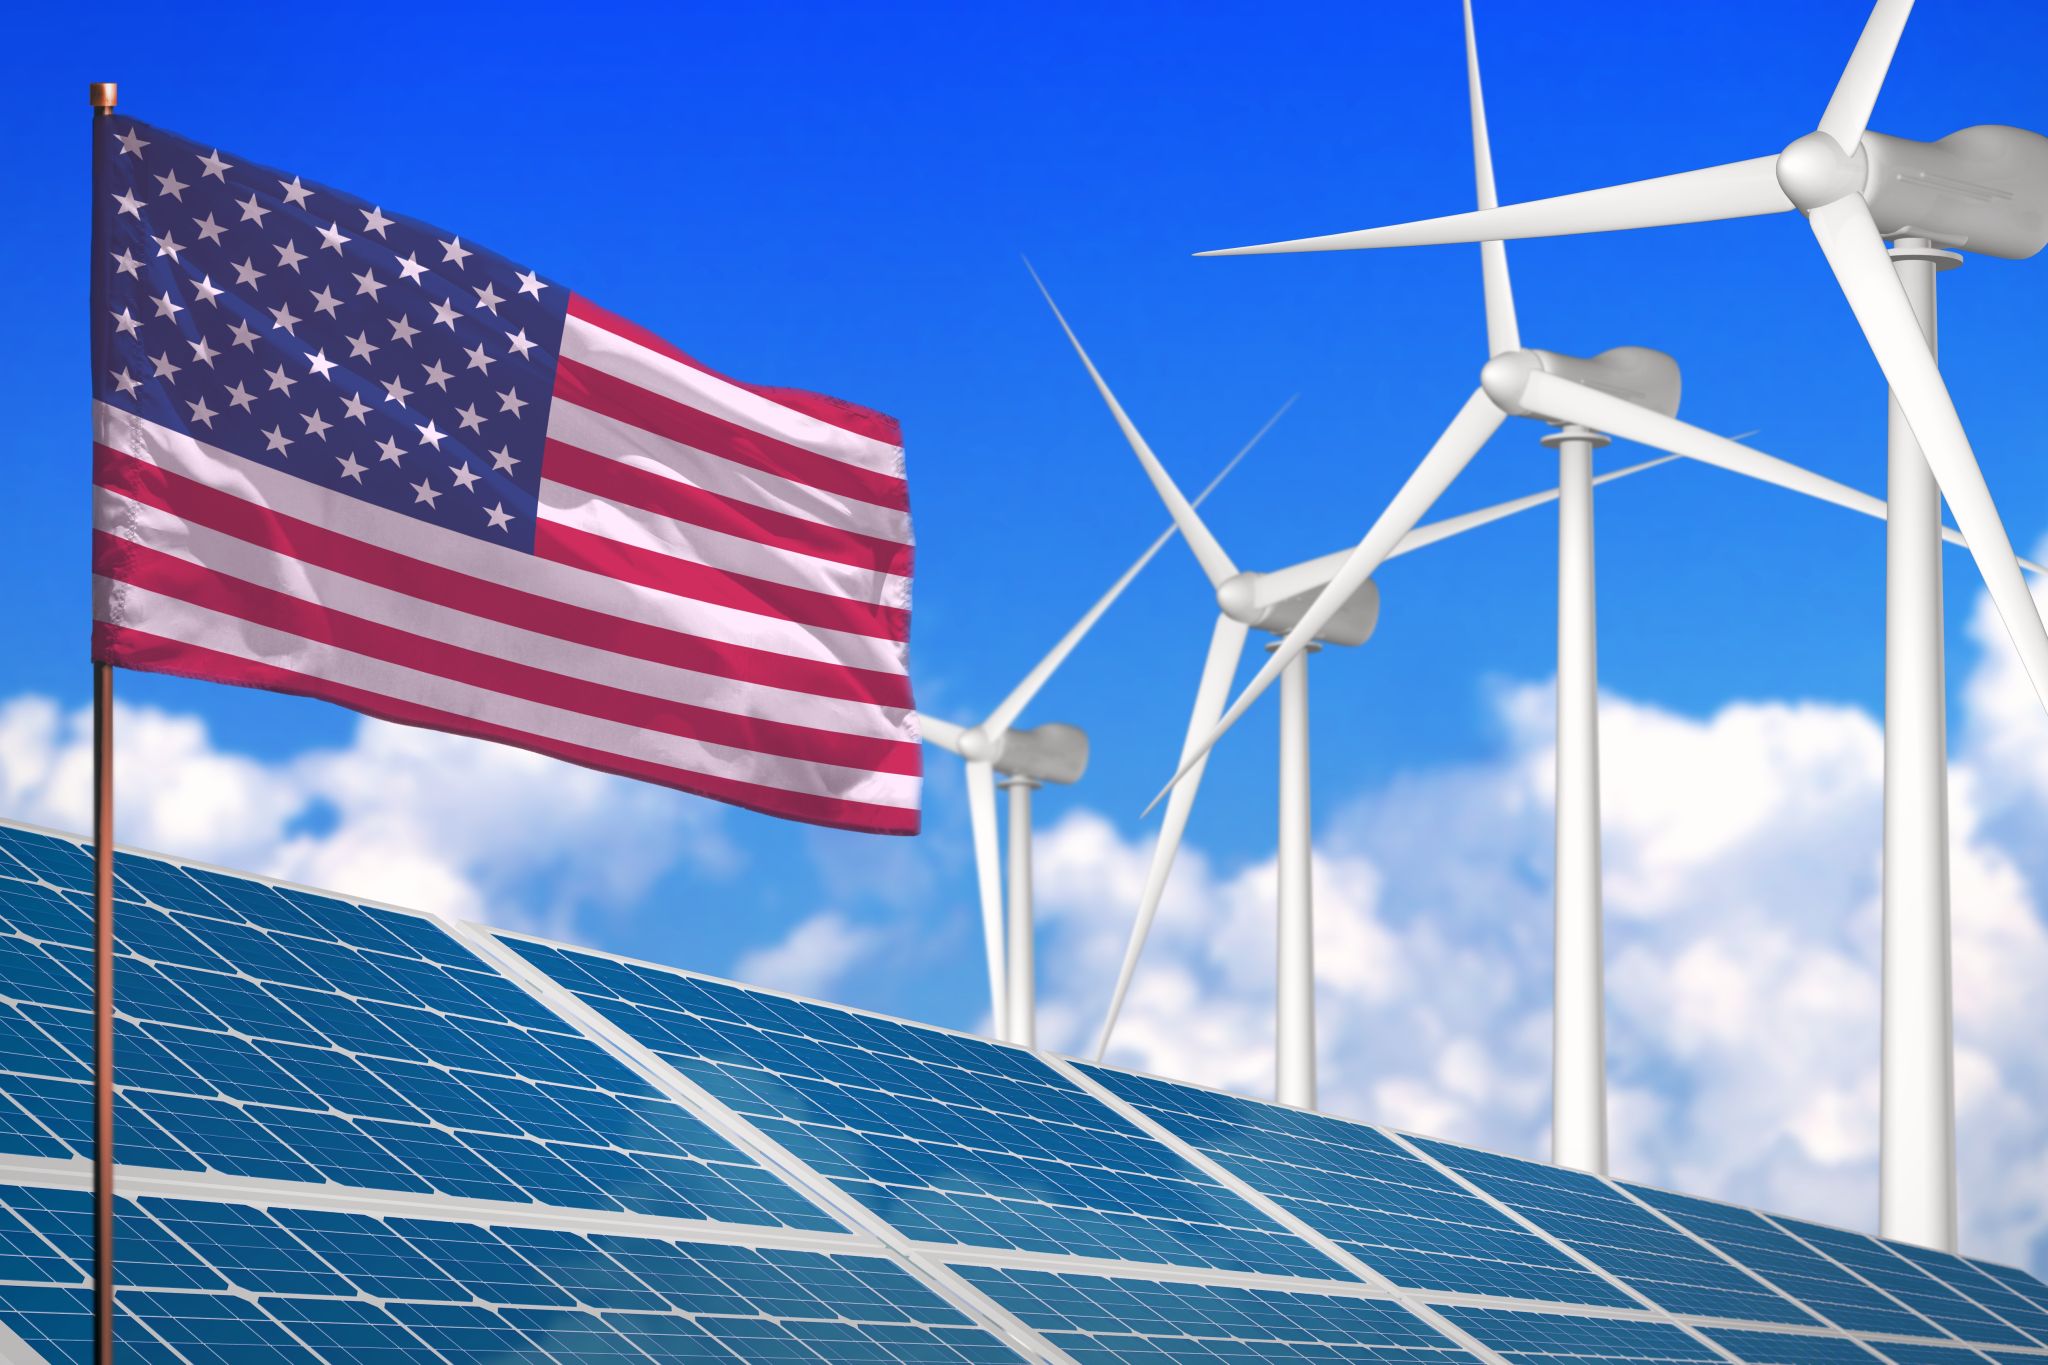 Hernieuwbare energie in de VS: Kansen, bedreigingen en lessen van de andere kant van de plas